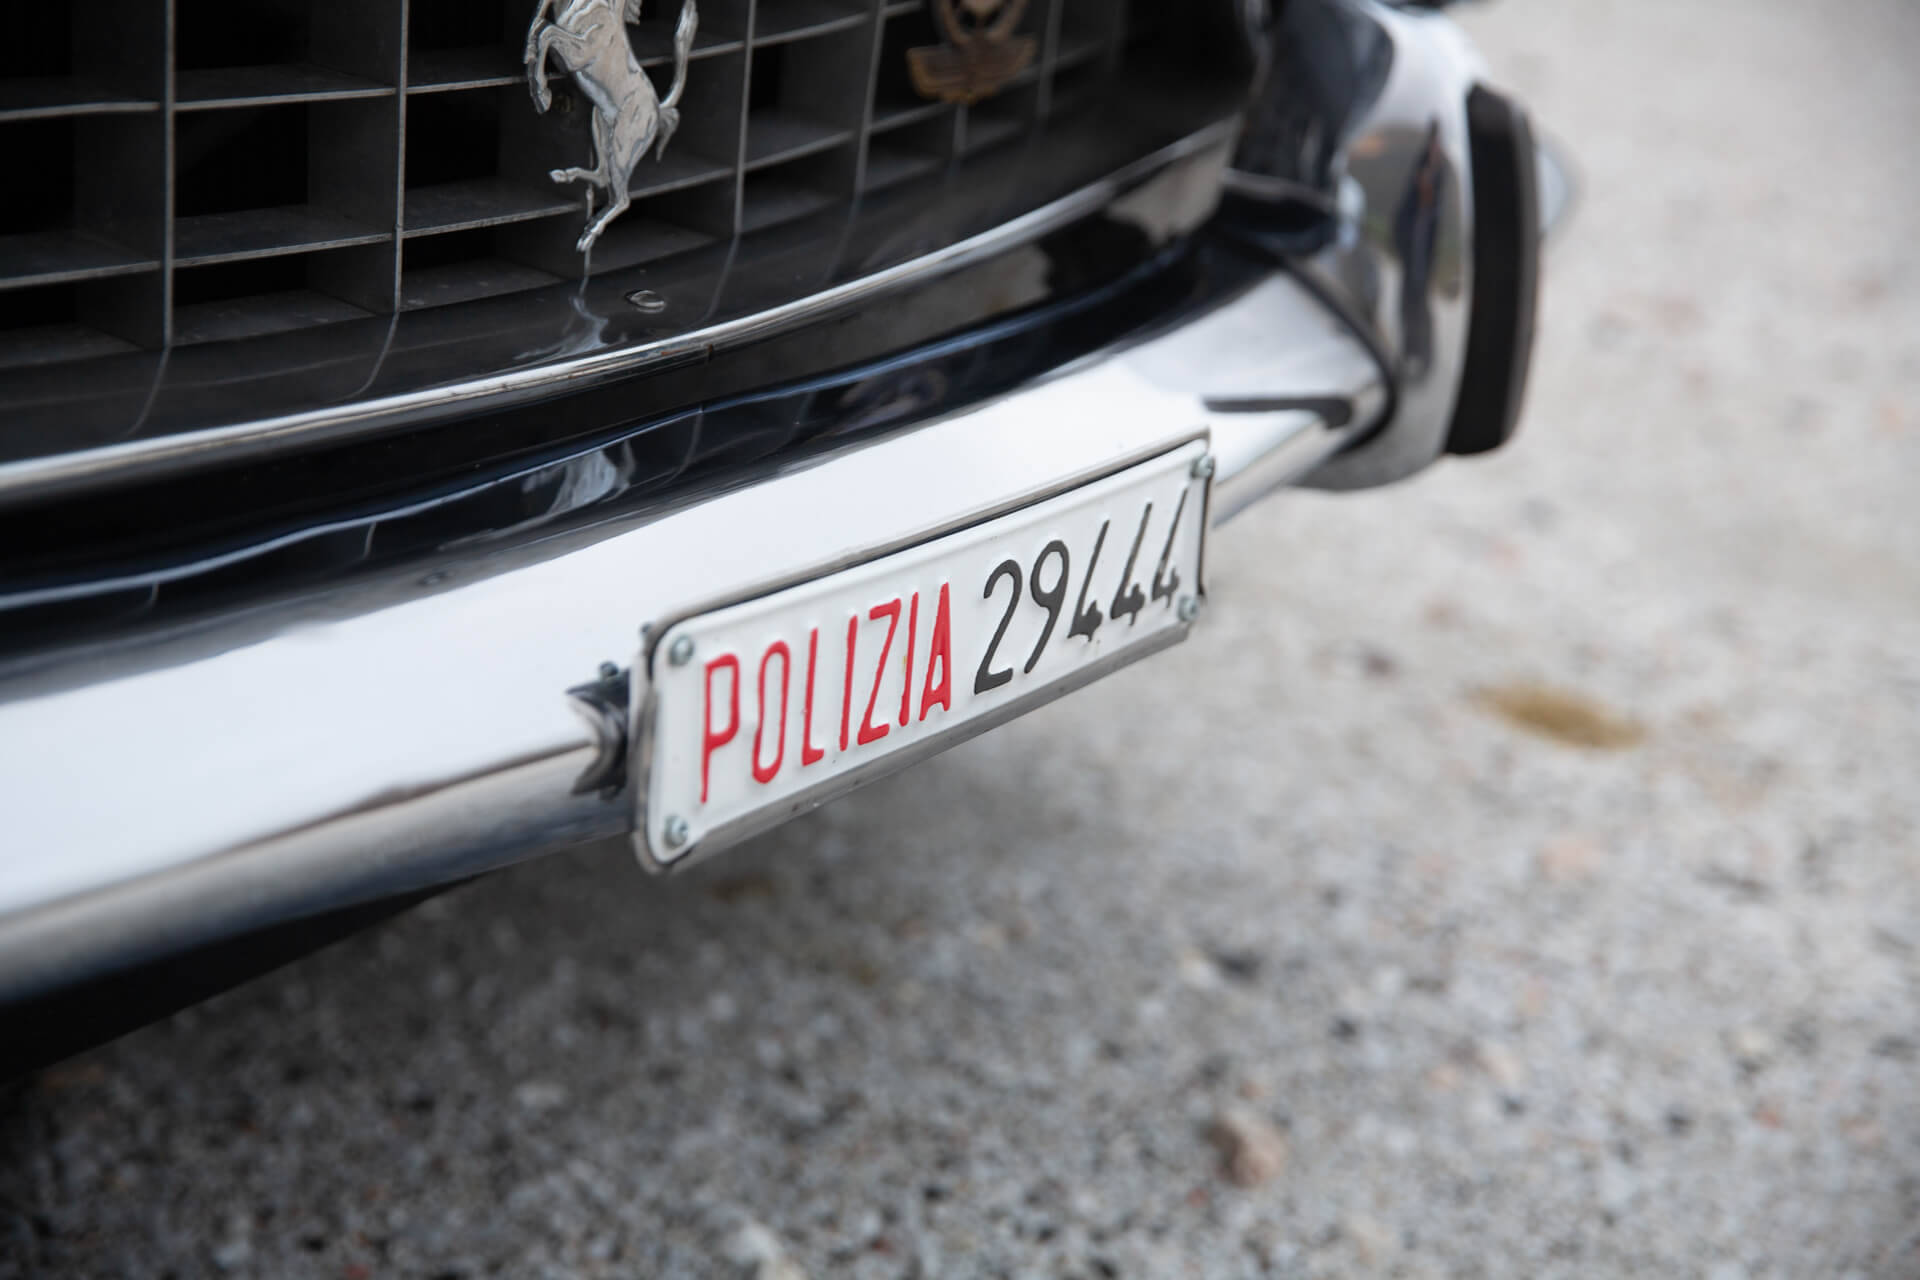 Ferrari 250 GTE policial. Foto: Divulgação